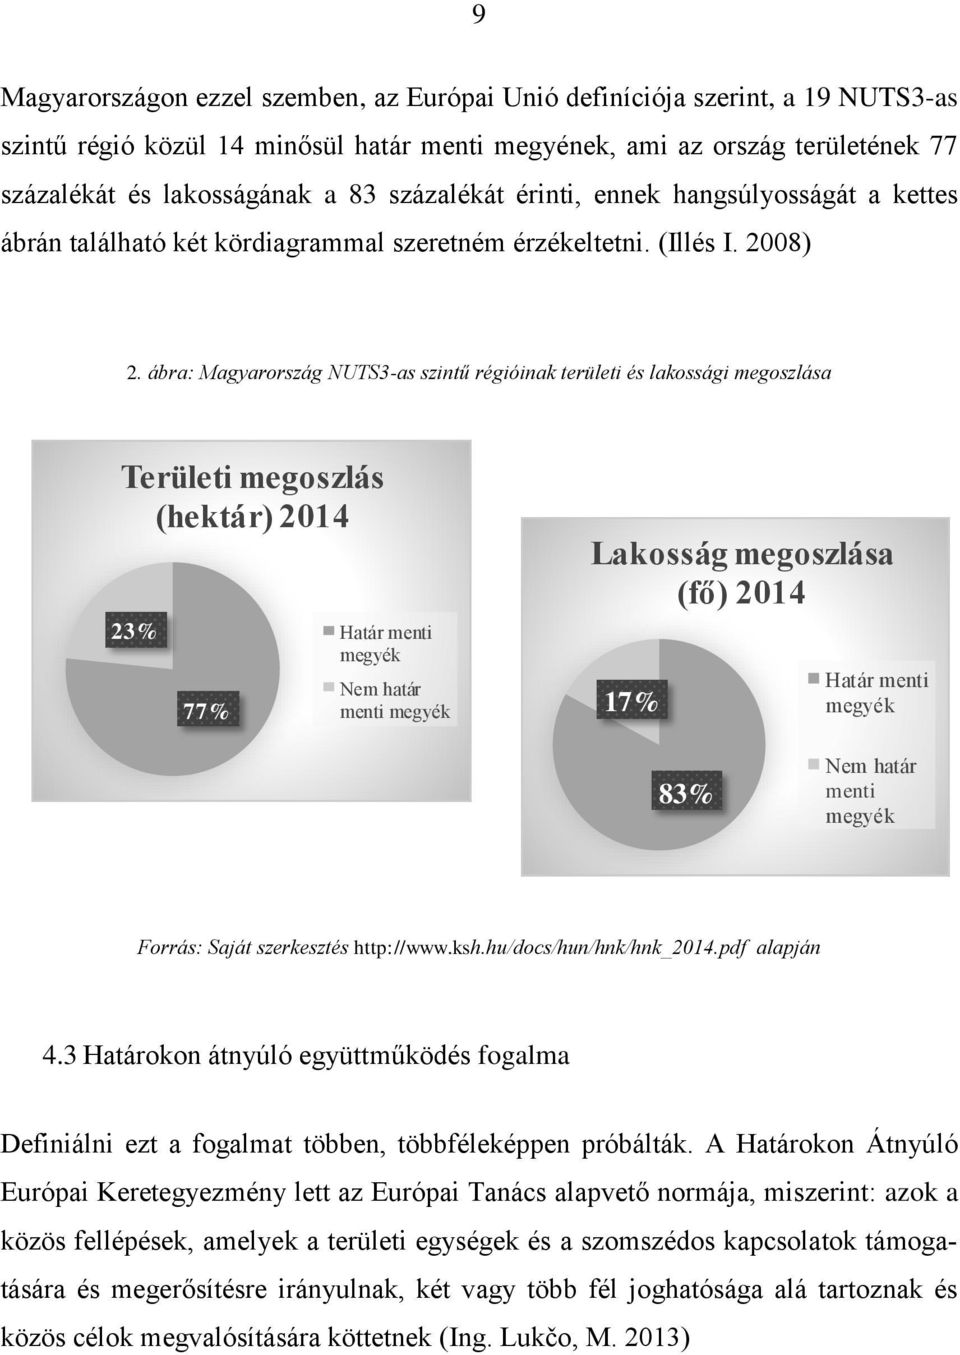 ábra: Magyarország NUTS3-as szintű régióinak területi és lakossági megoszlása Területi megoszlás (hektár) 2014 23% 77% Határ menti megyék Nem határ menti megyék Lakosság megoszlása (fő) 2014 17%